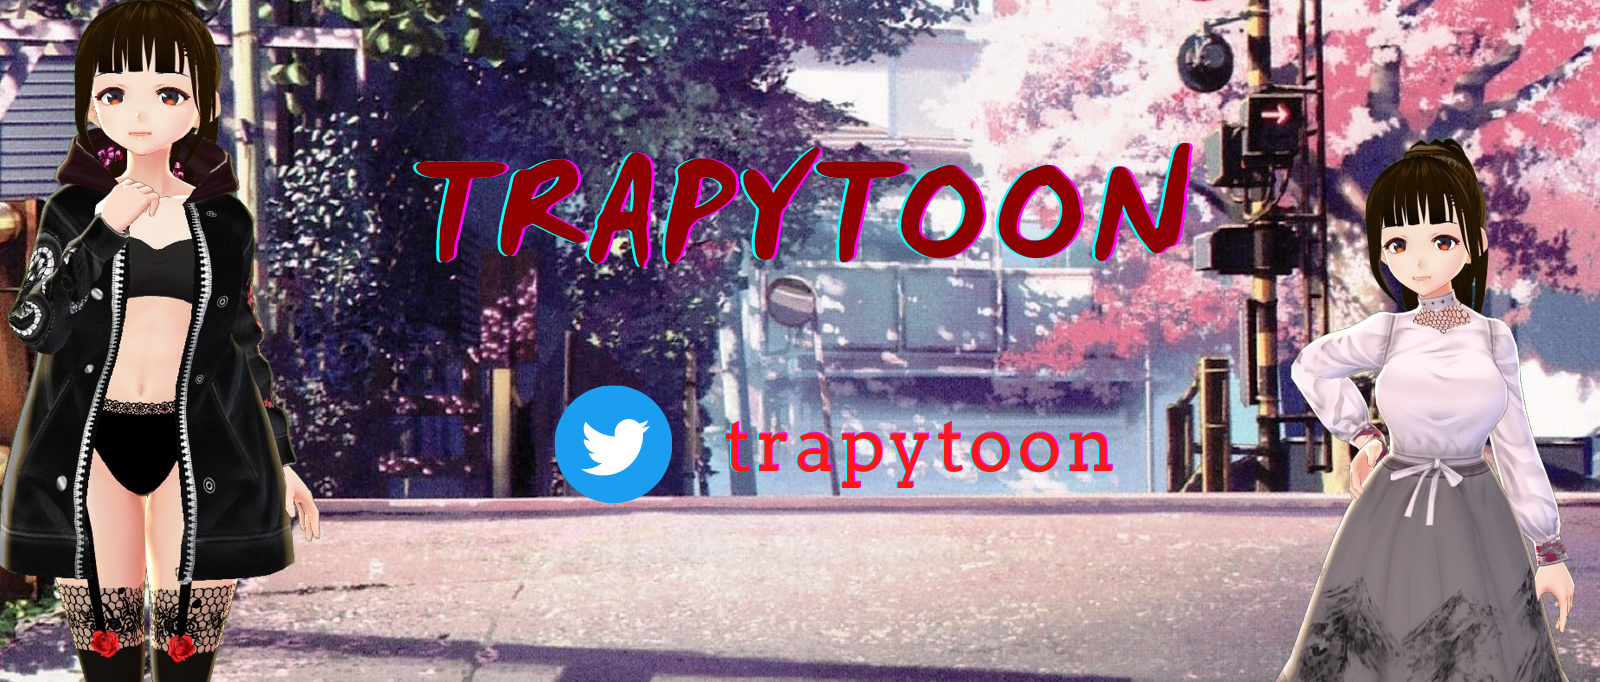 trapytoon